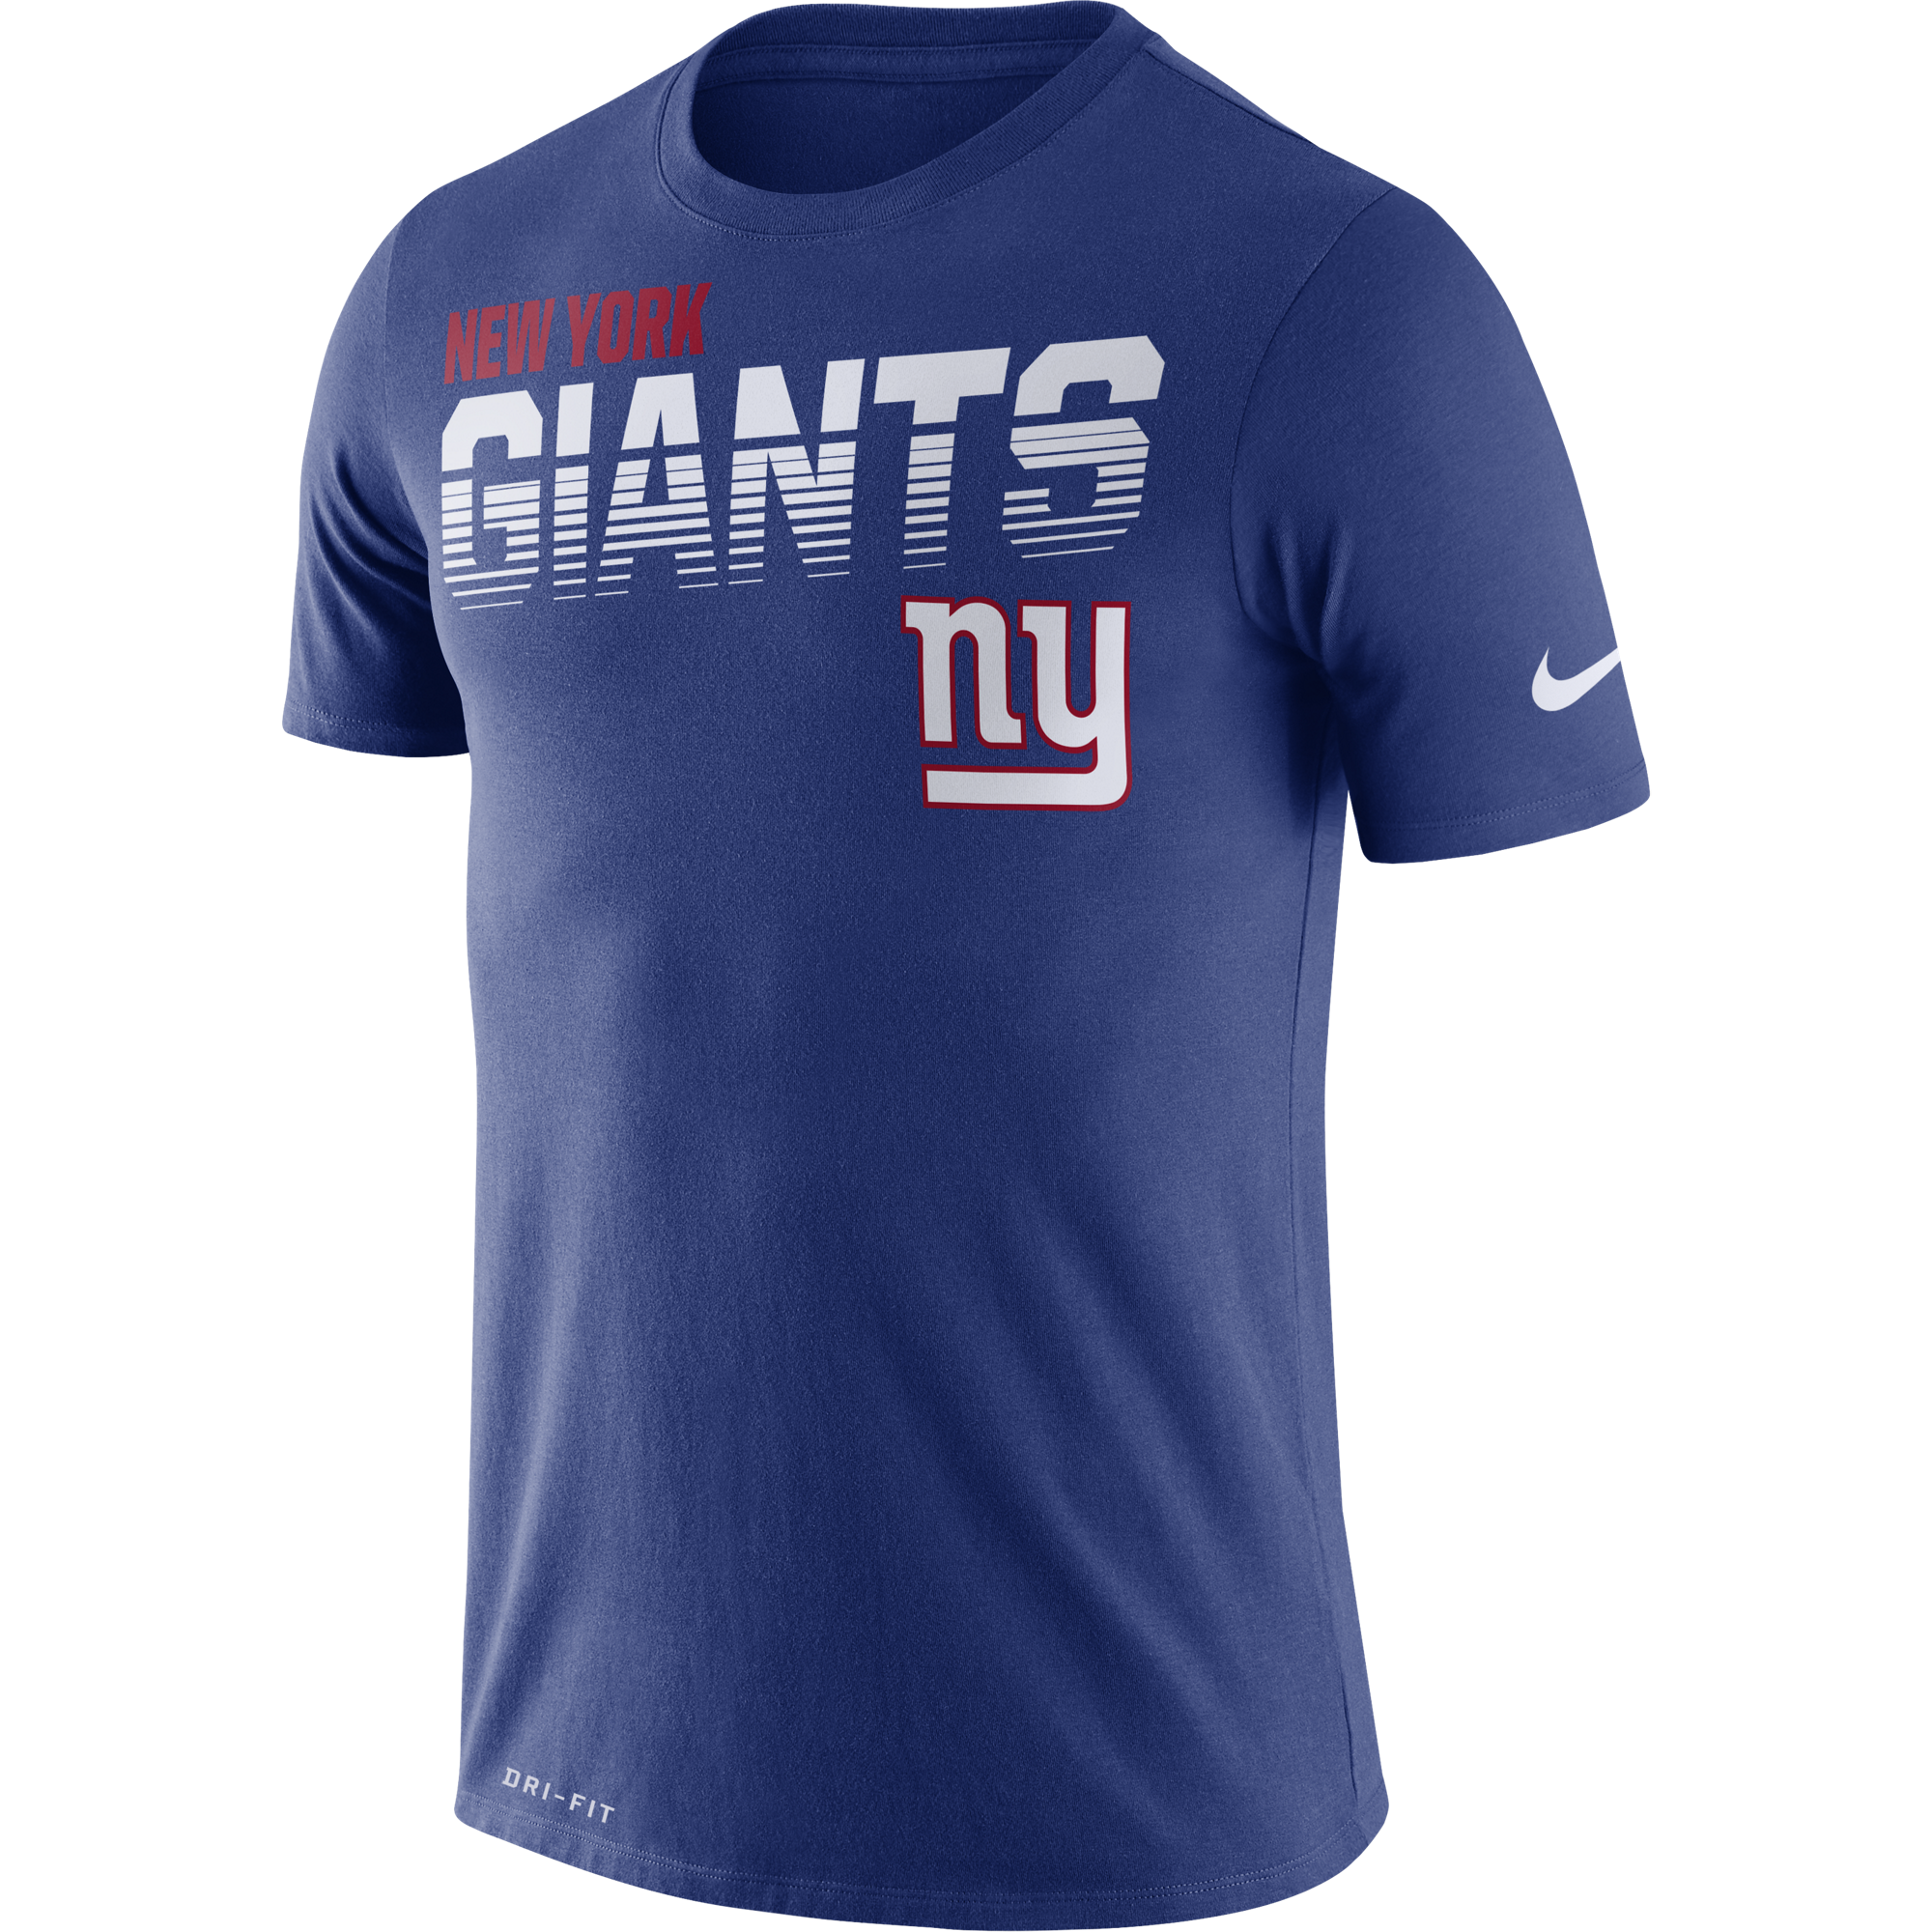 buy ny giants jersey